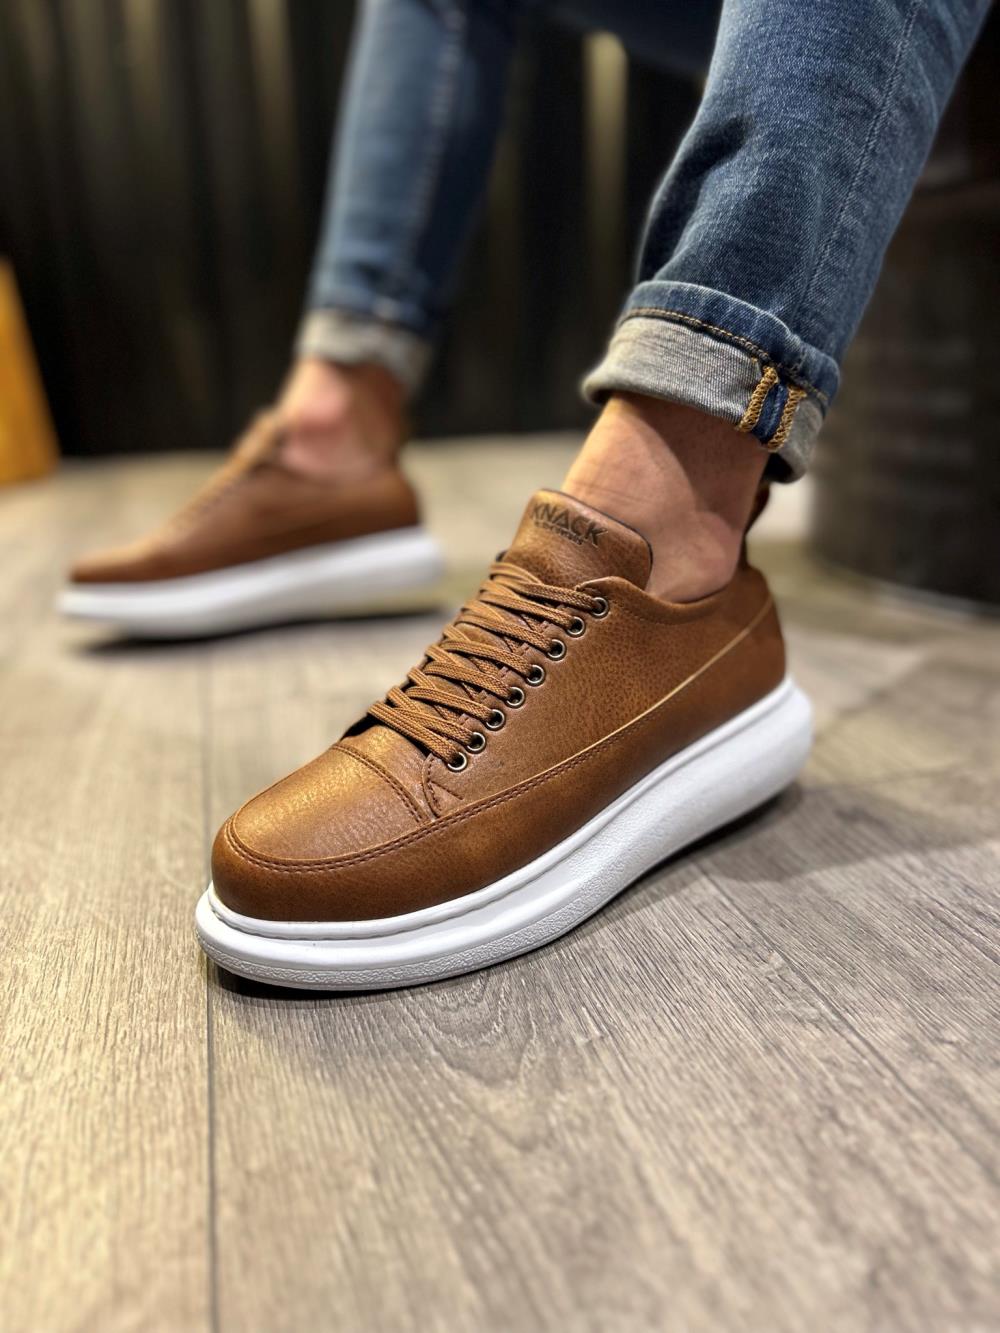 Men's Casual Sneakers Shoes 814 Tan - STREETMODE™